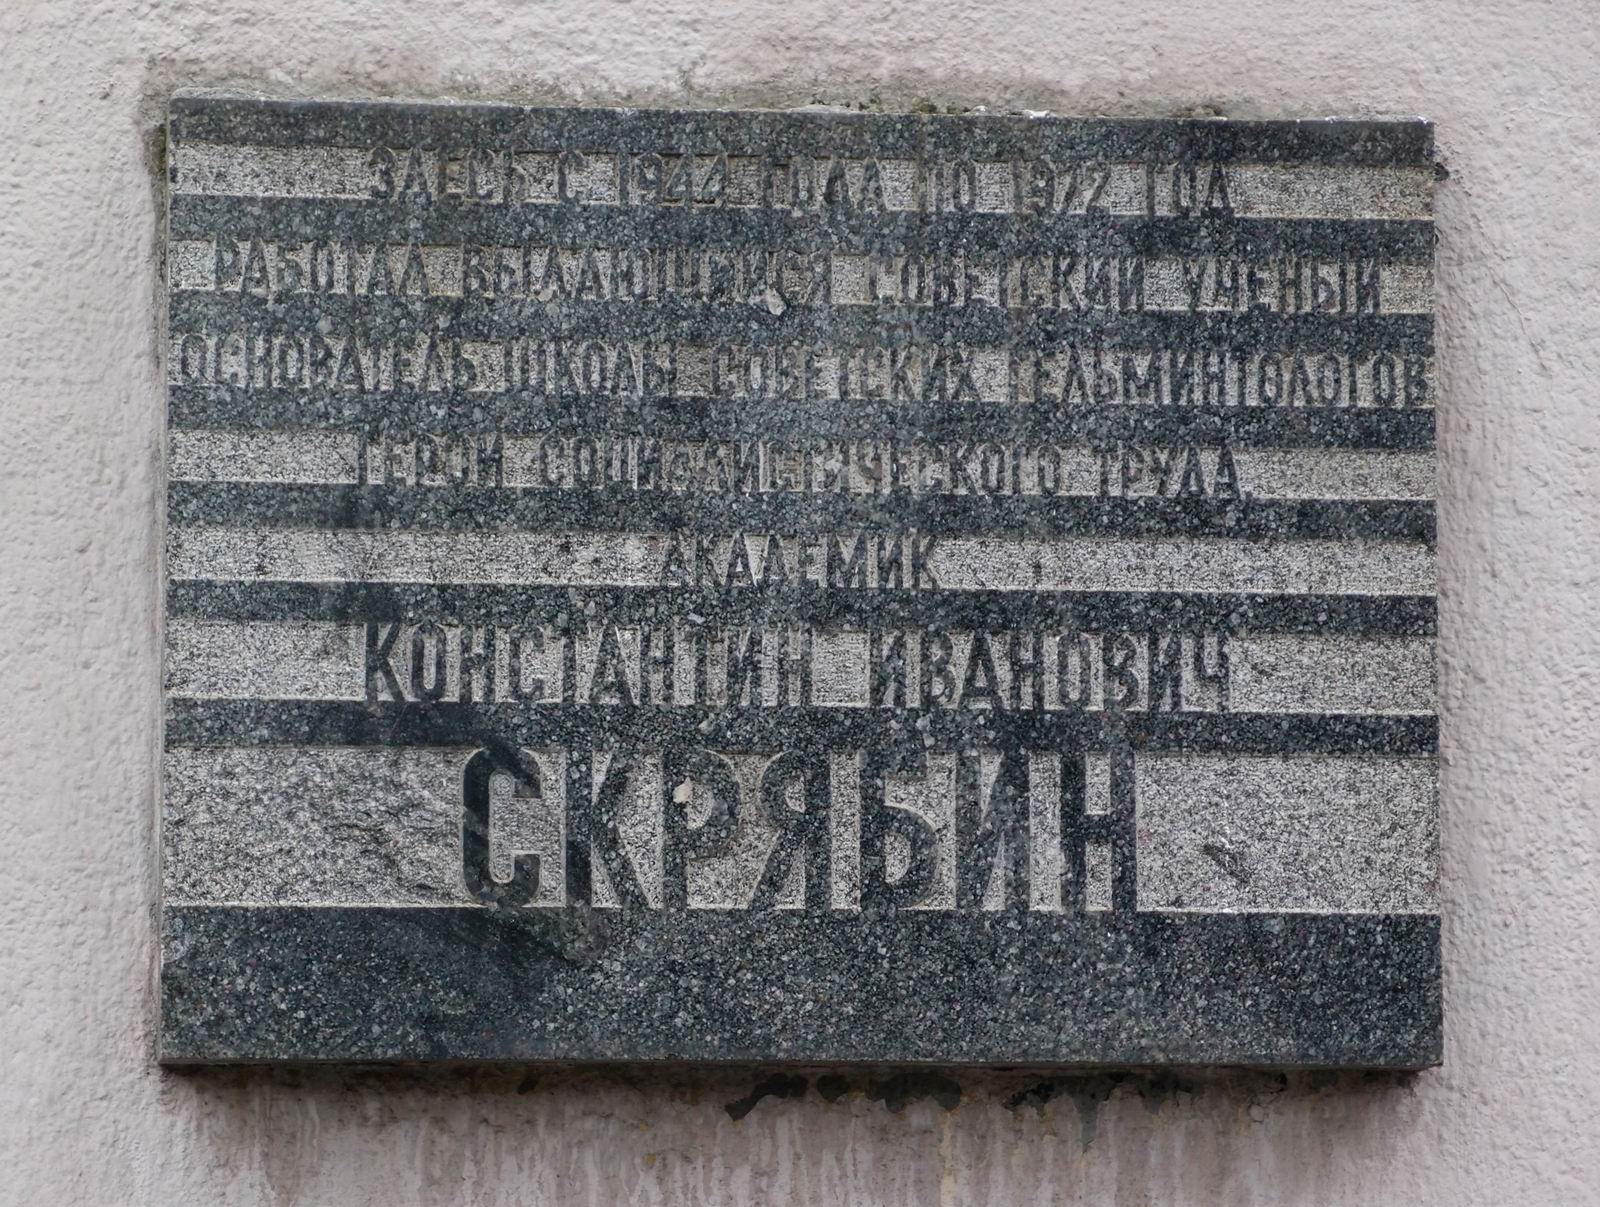 Мемориальная доска Скрябину К.И. (1878–1972), арх. И.Н.Андрианов, на Ленинском проспекте, дом 33, открыта 16.8.1974.